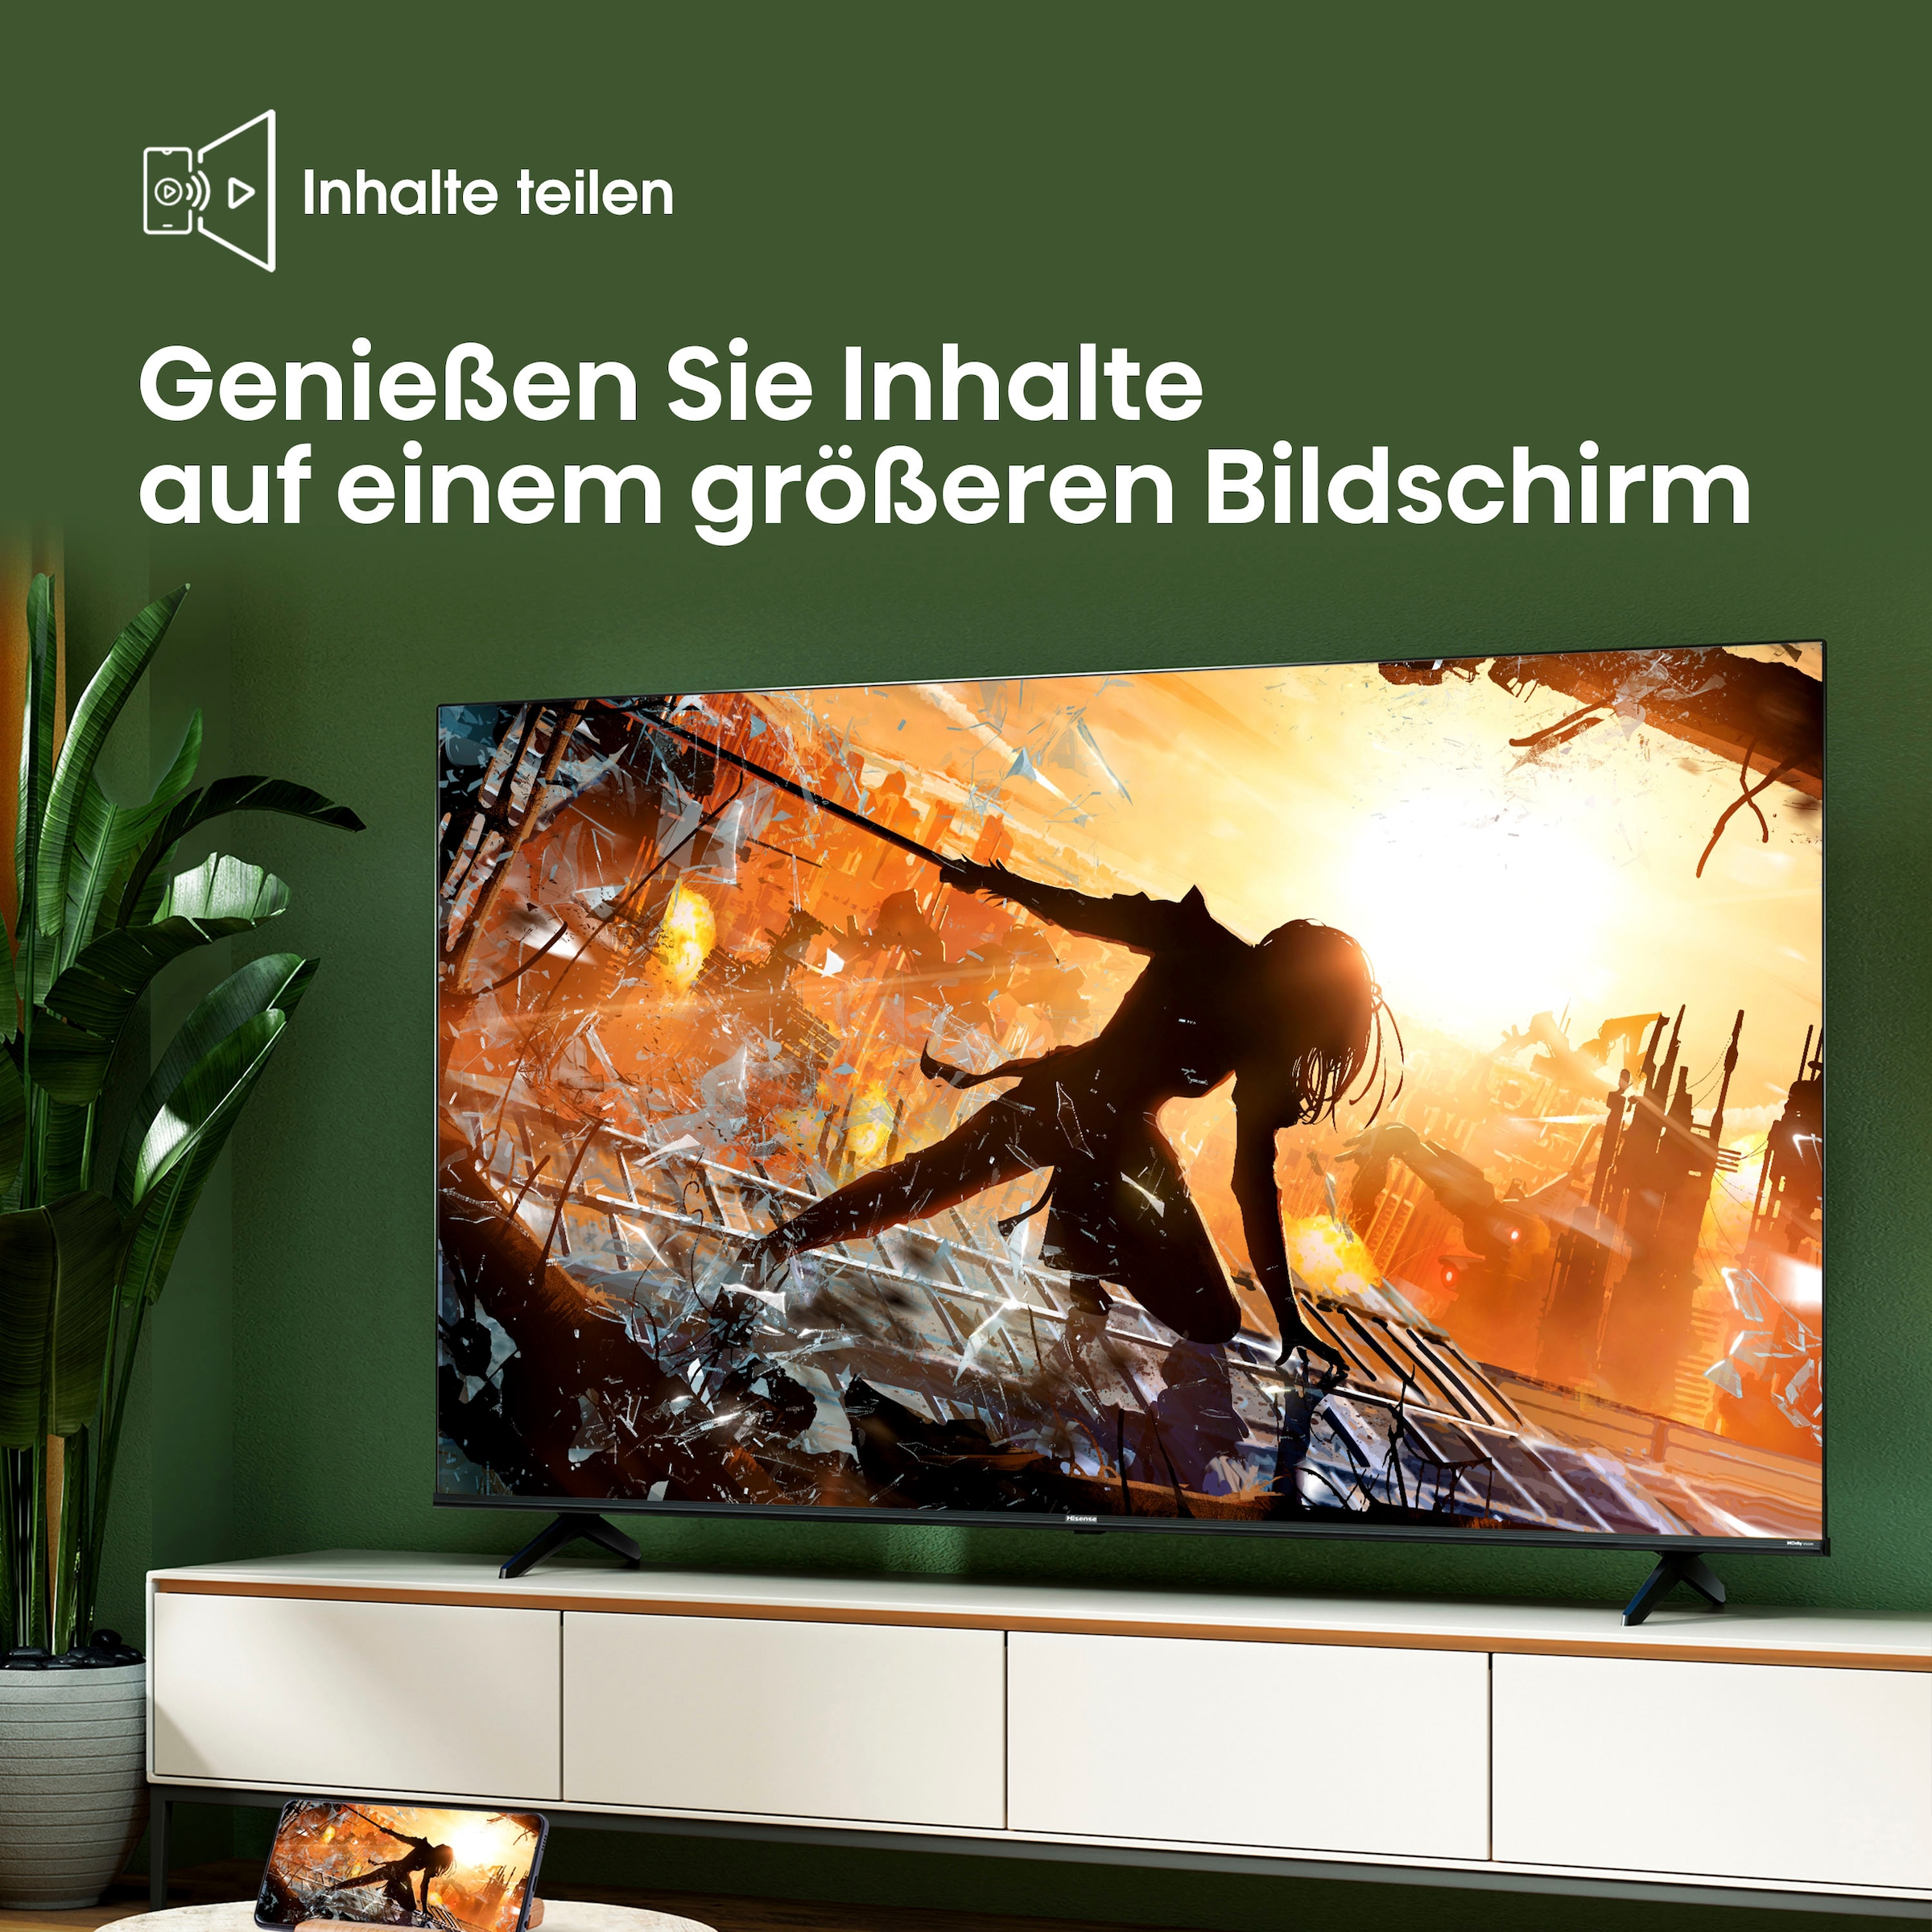 Hisense LED-Fernseher, 190,5 cm/75 Zoll, 4K Ultra HD, Smart-TV, Smart-TV, Dolby Vision, Triple Tuner DVB-C/S/S2/T/T2